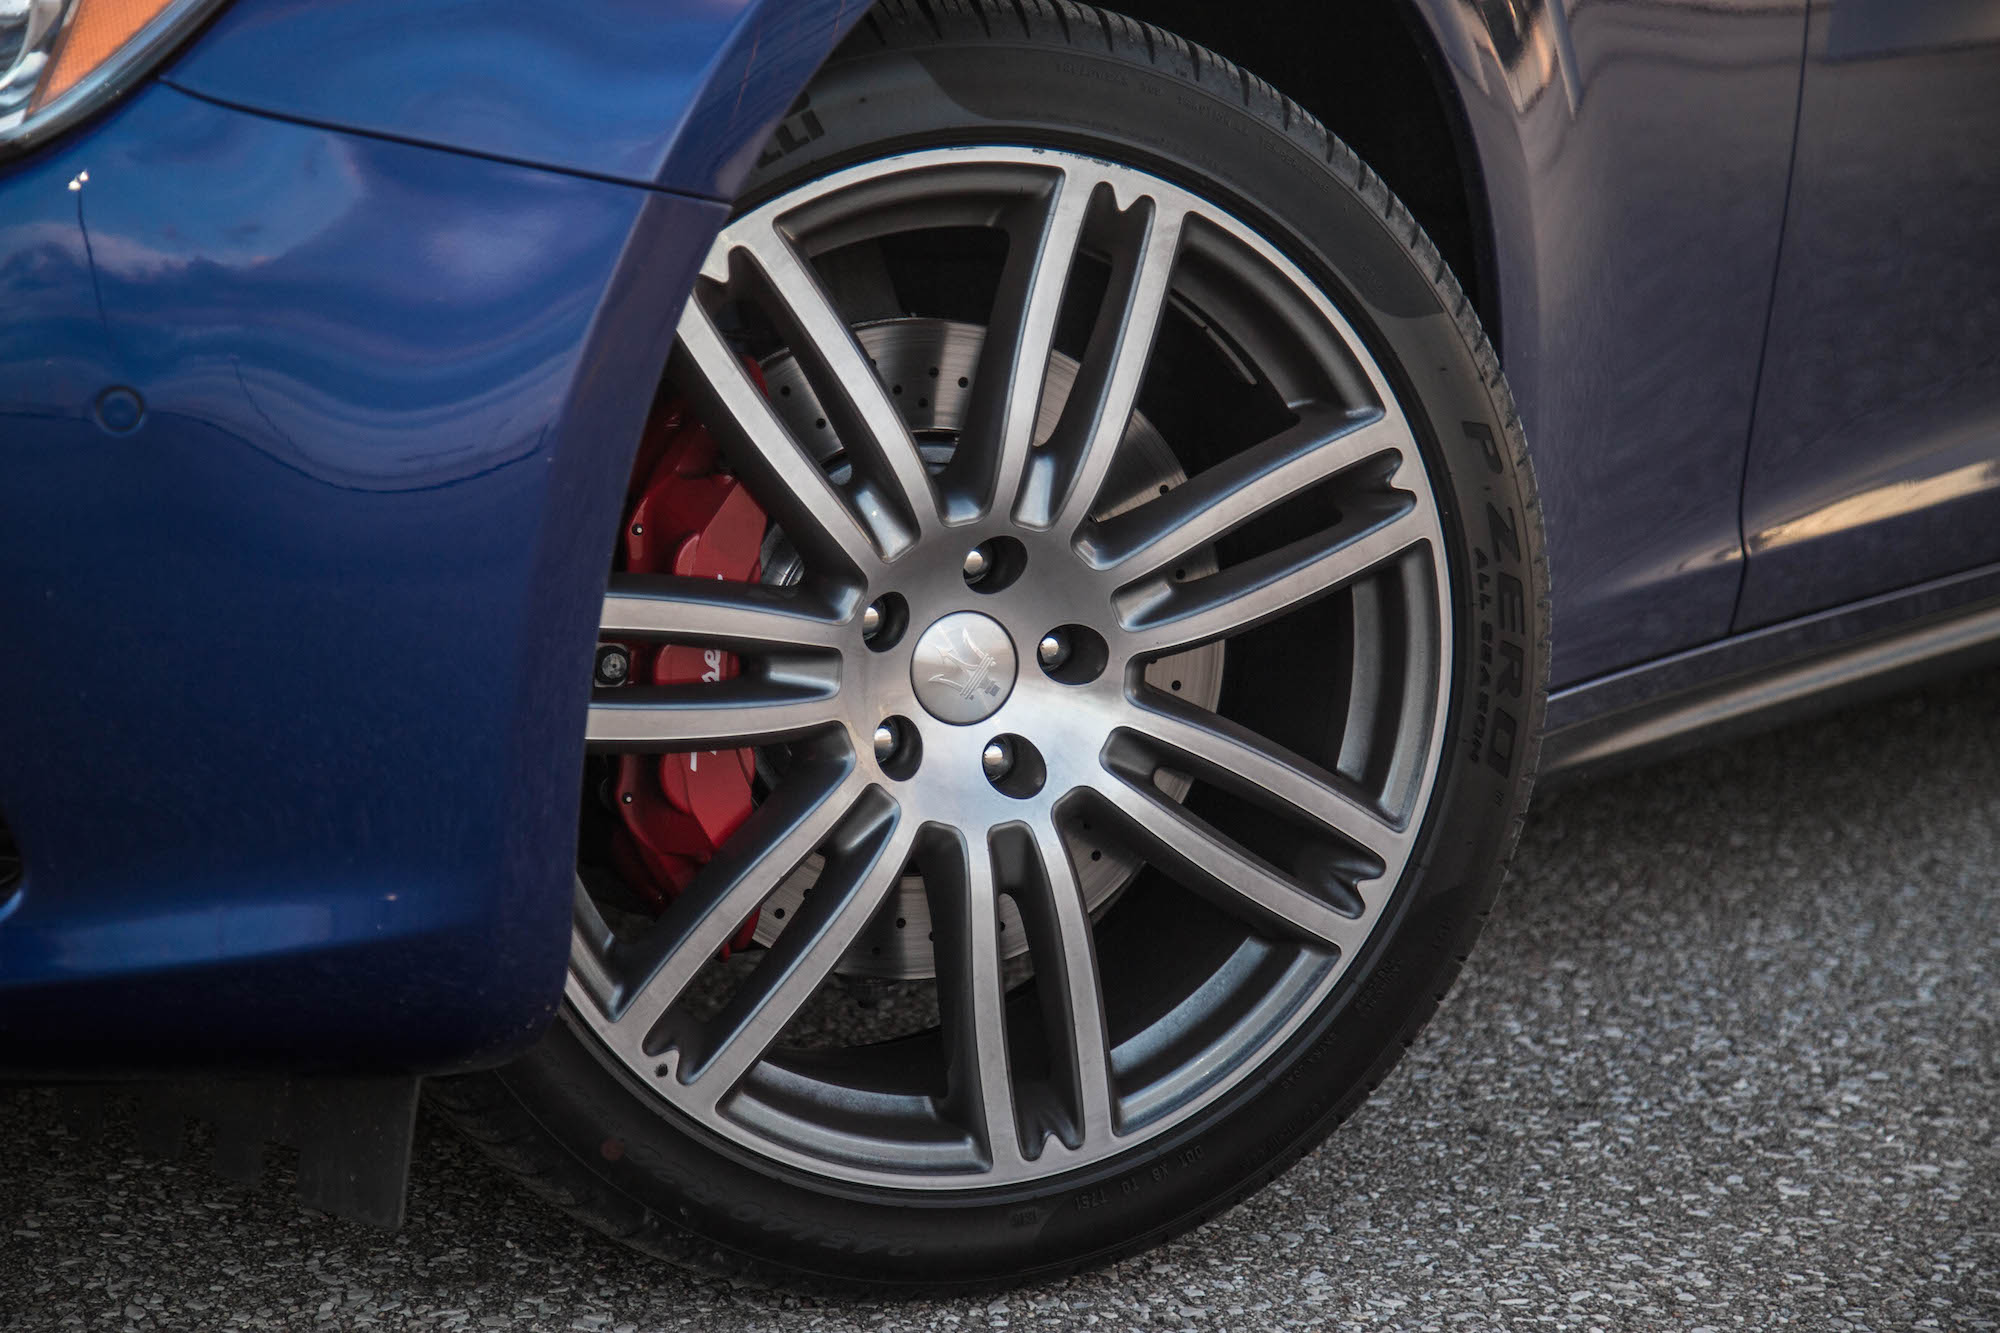 Lốp Pirelli trên xe Maserati đang gặp lỗi nghiêm trọng